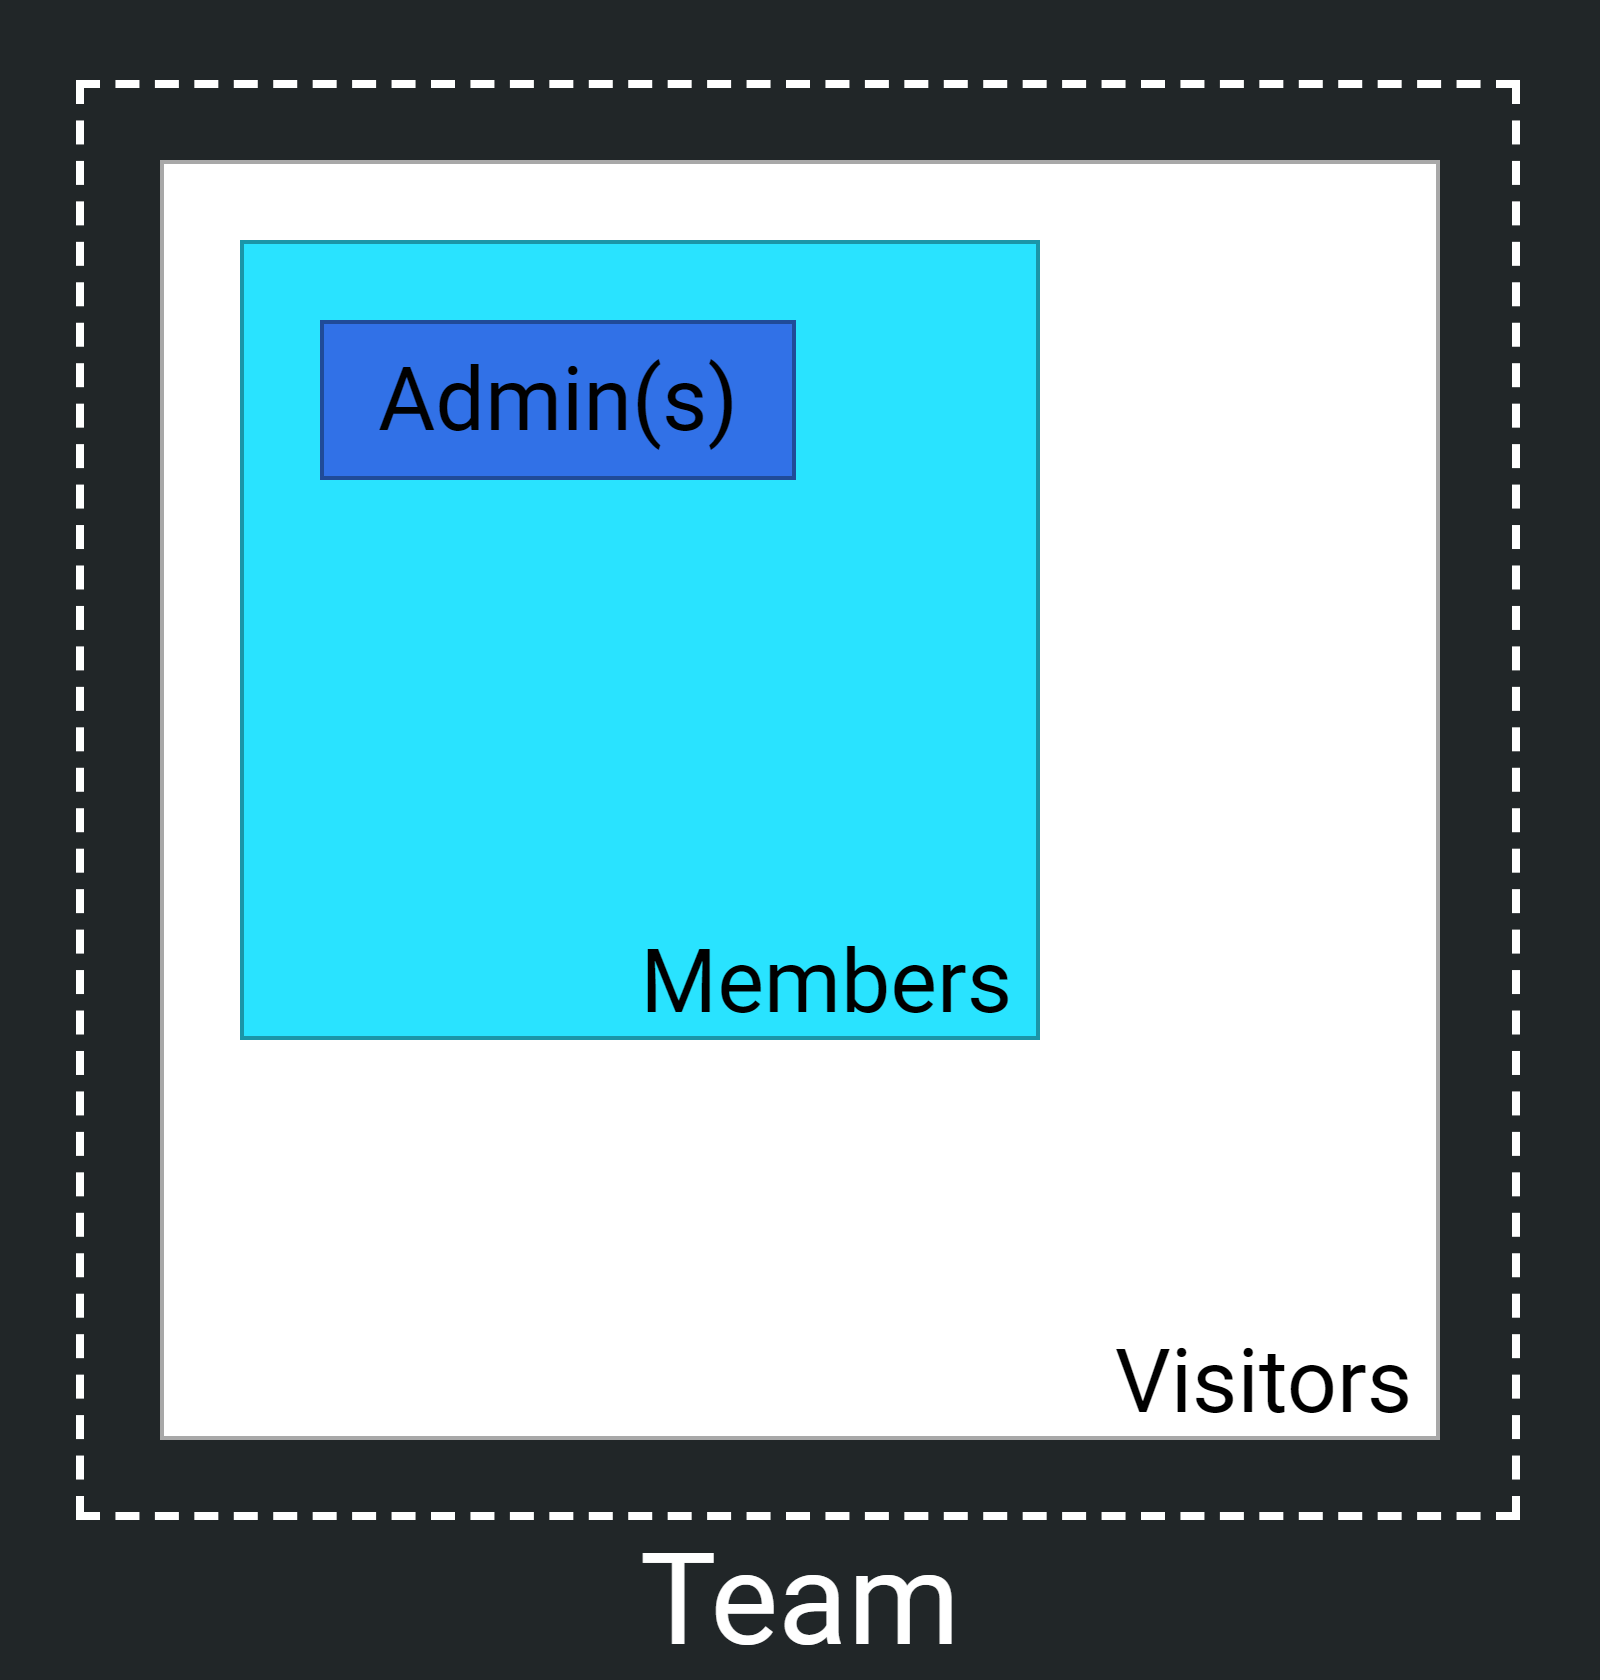 Draft.io - Team perimeter with visitors